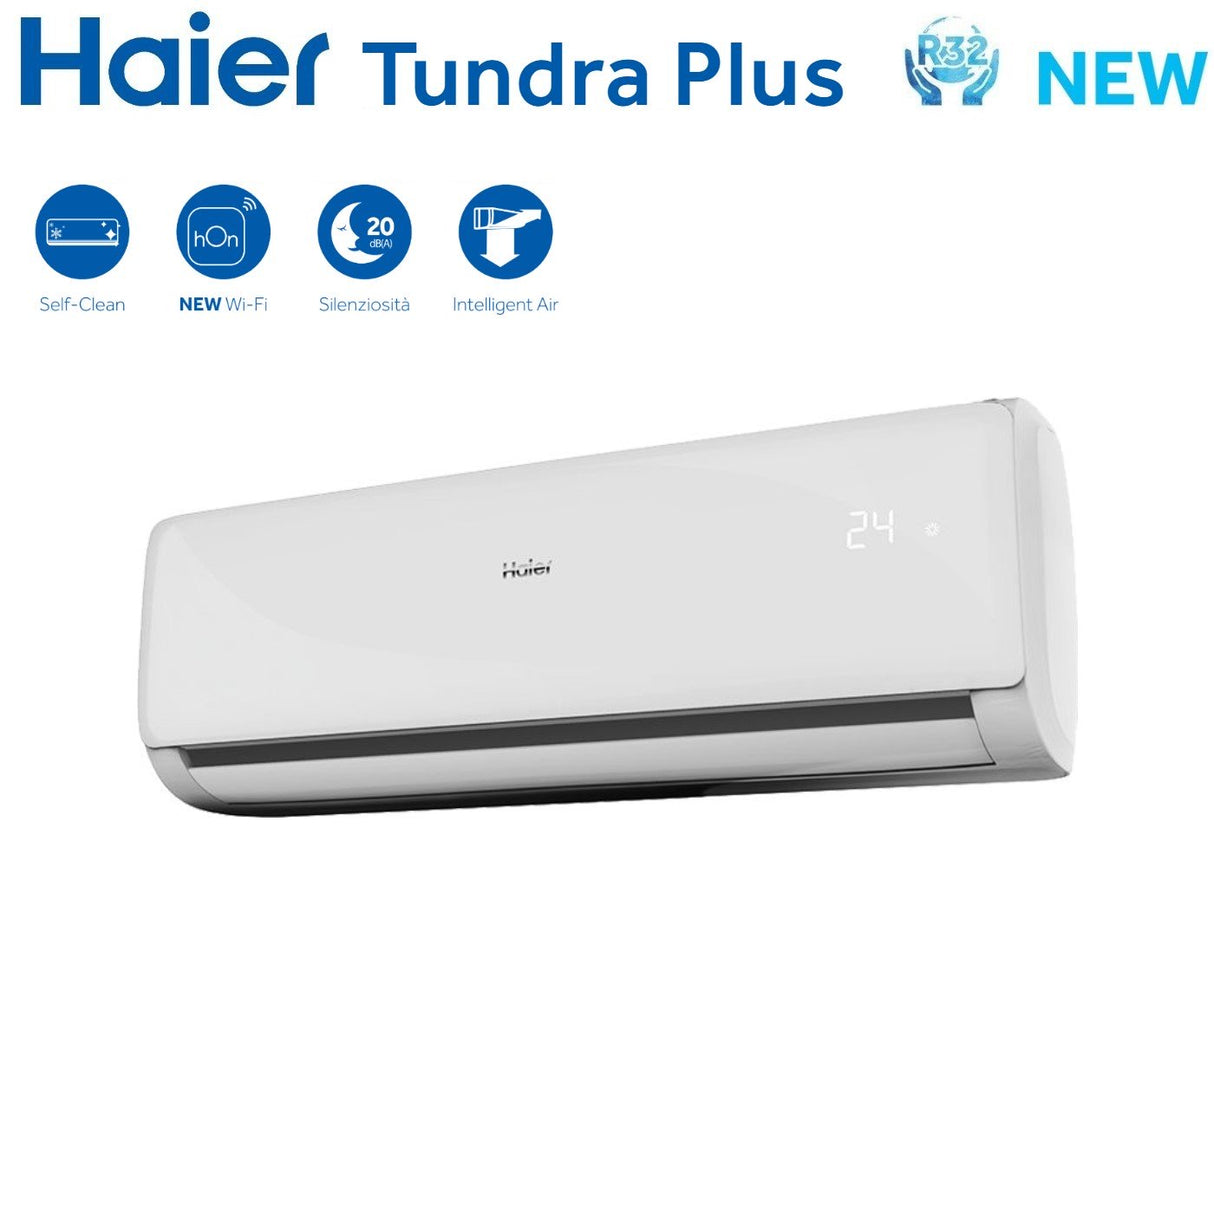 immagine-3-haier-climatizzatore-condizionatore-haier-dual-split-inverter-serie-tundra-plus-912-con-2u40s2sm1fa-r-32-wi-fi-integrato-900012000-ean-8059657012869